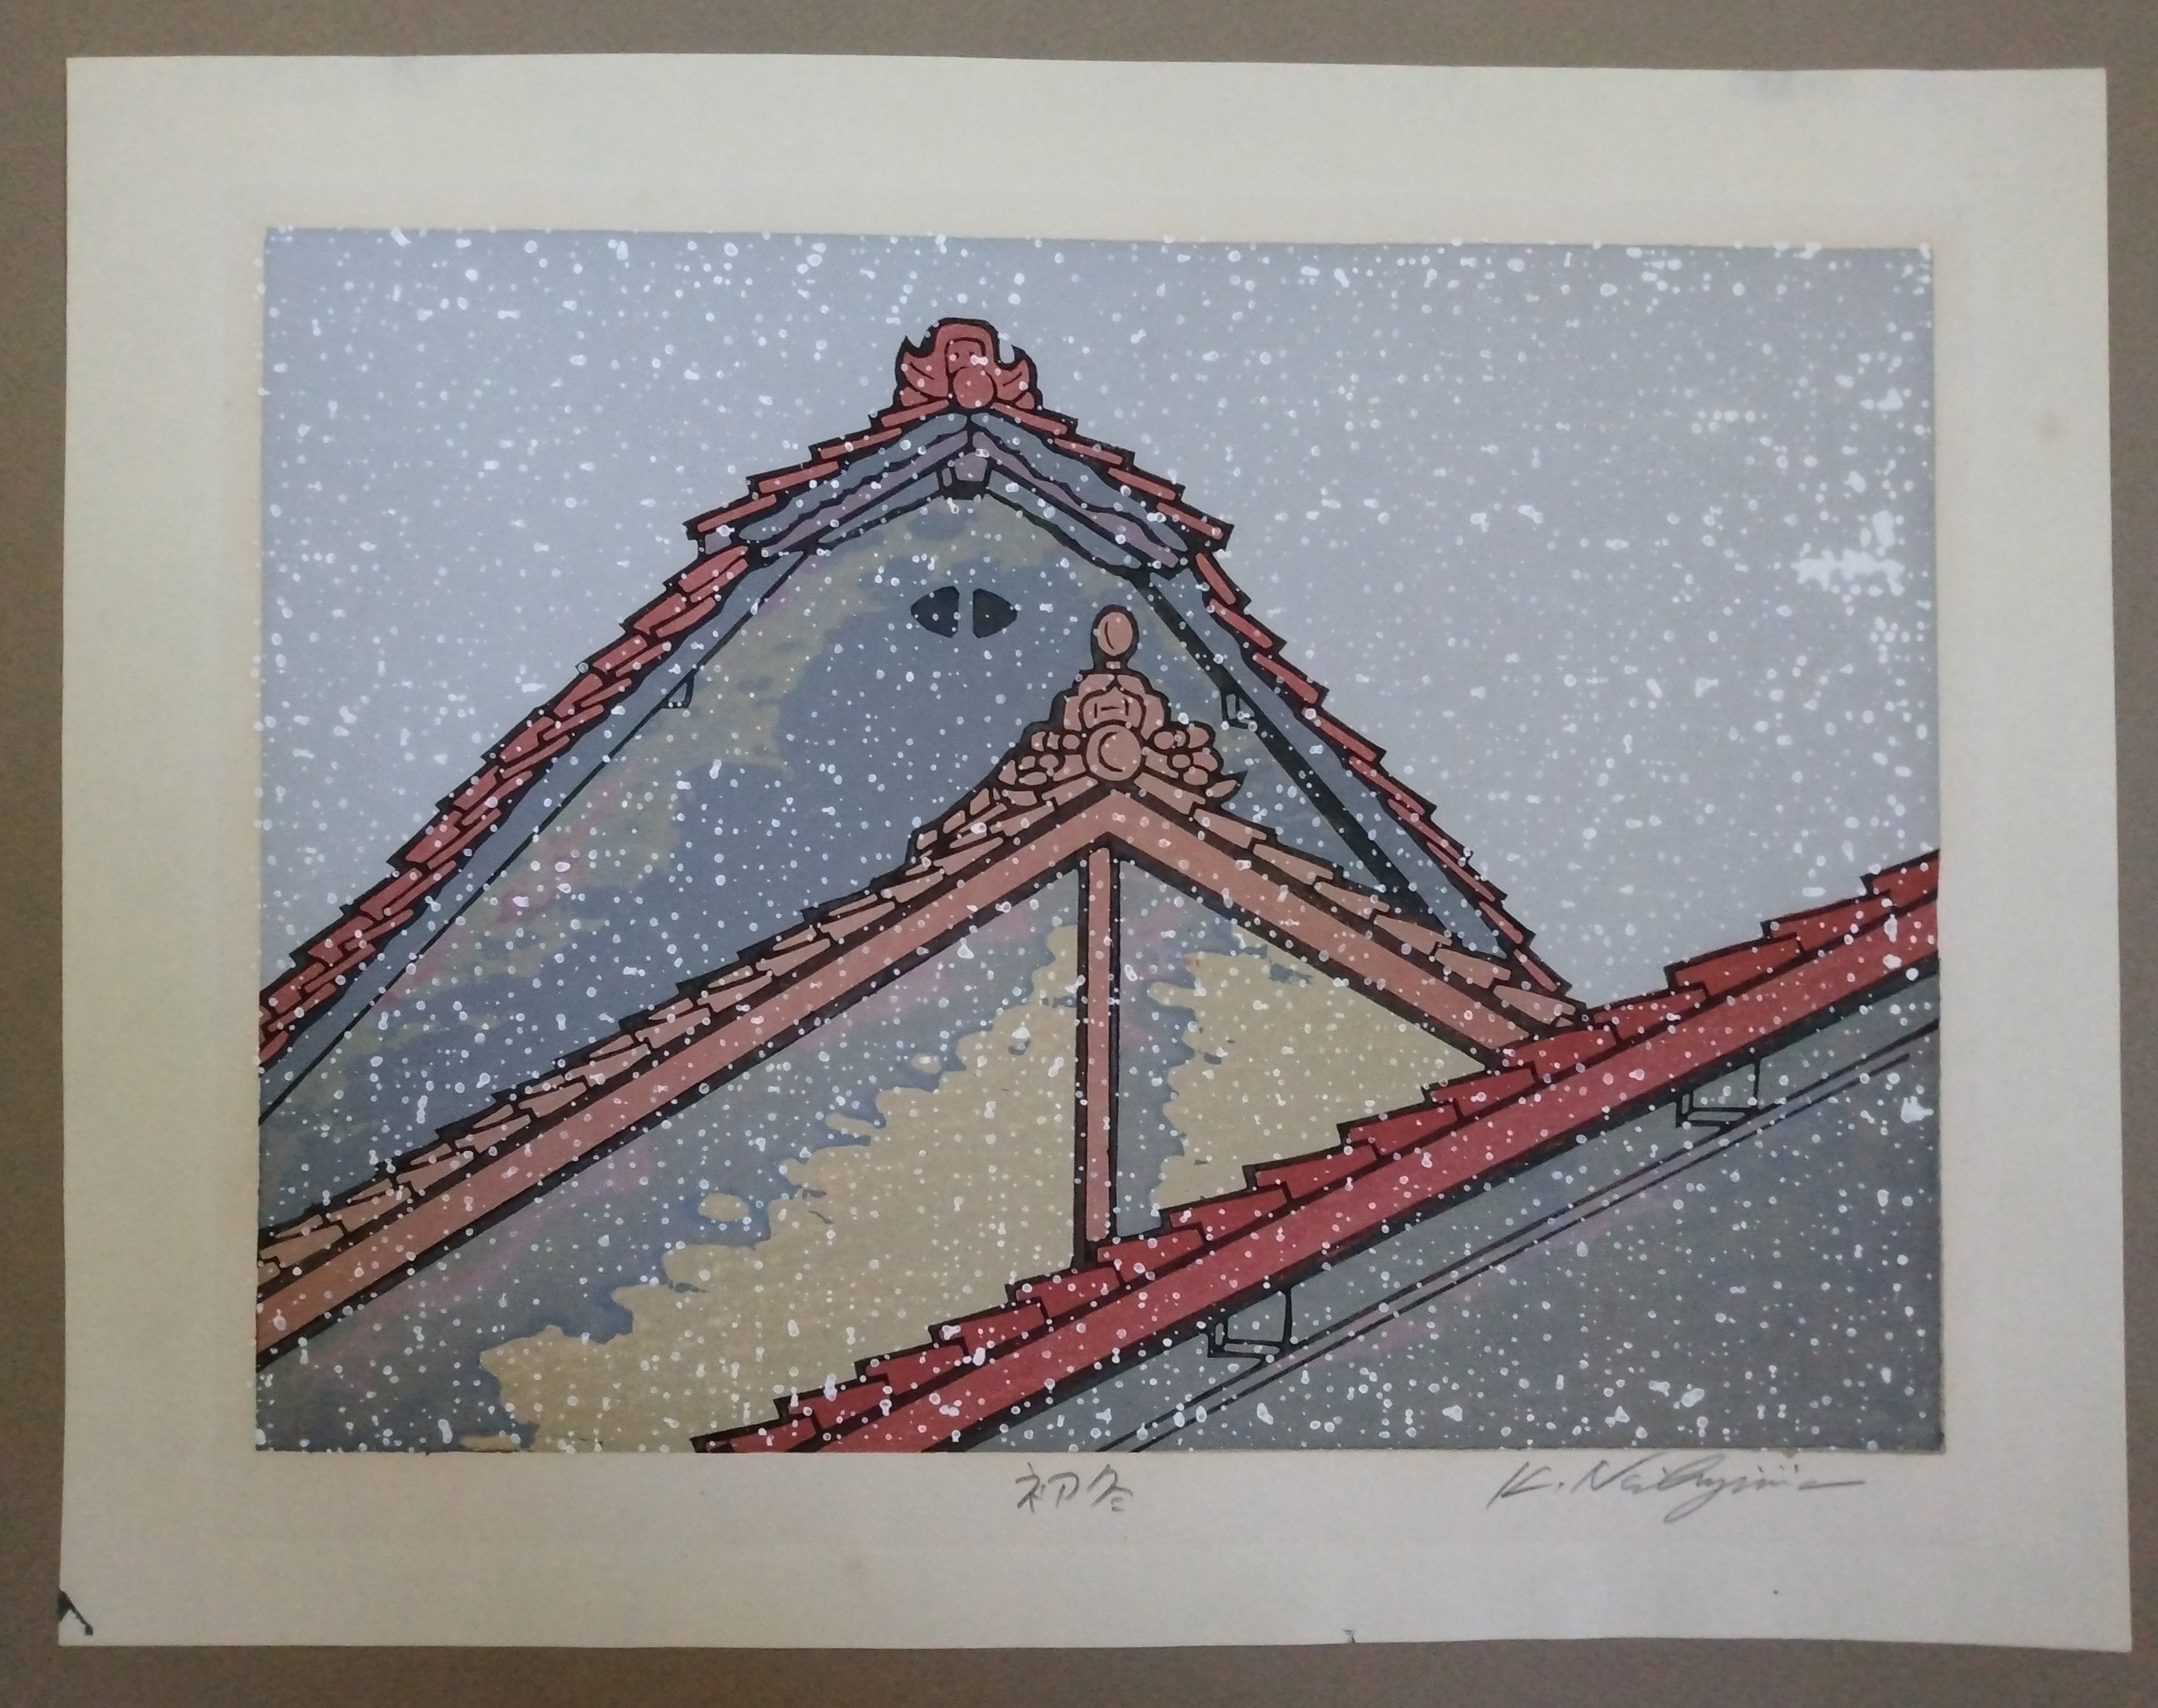 Woodblock Print by Katsuyuki Nishijima, "First Snow" (Hatsu Yuki)